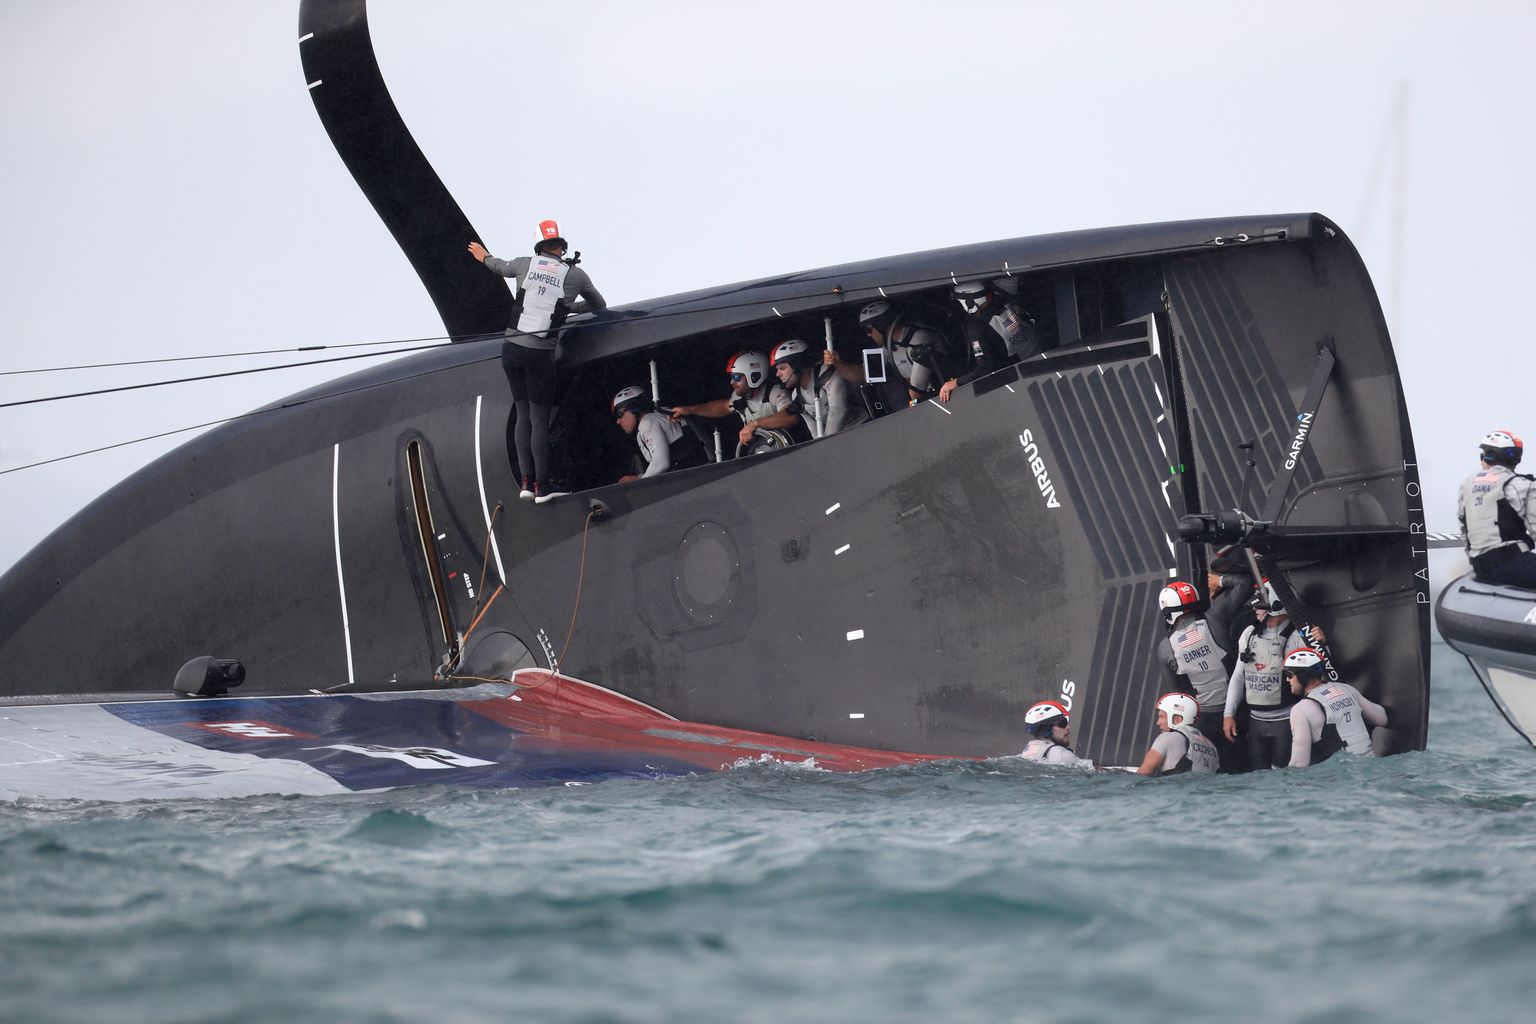 New York Yacht Club'i tiimi American Magic jaht Patriot tegi võistlussõidul Luna Rossa Prada Pirelli vastu tõsise avarii ning sattus uppumisohtu.